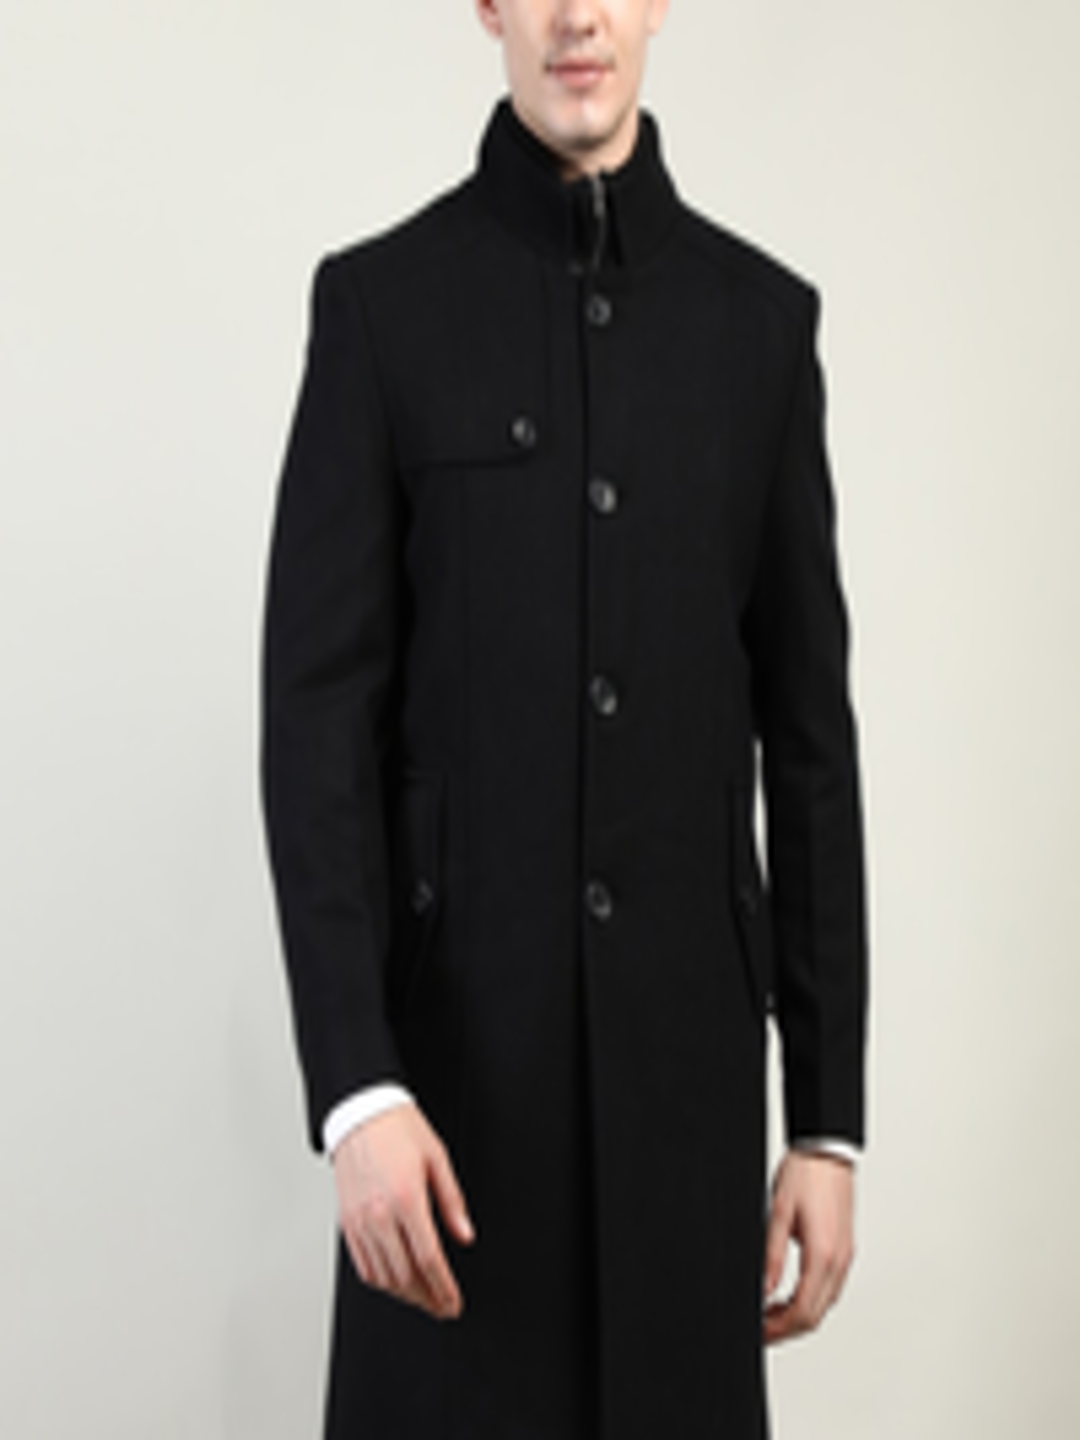 Buy LURE URBAN Men Black Solid Wool Overcoat - Coats for Men 20790520 ...